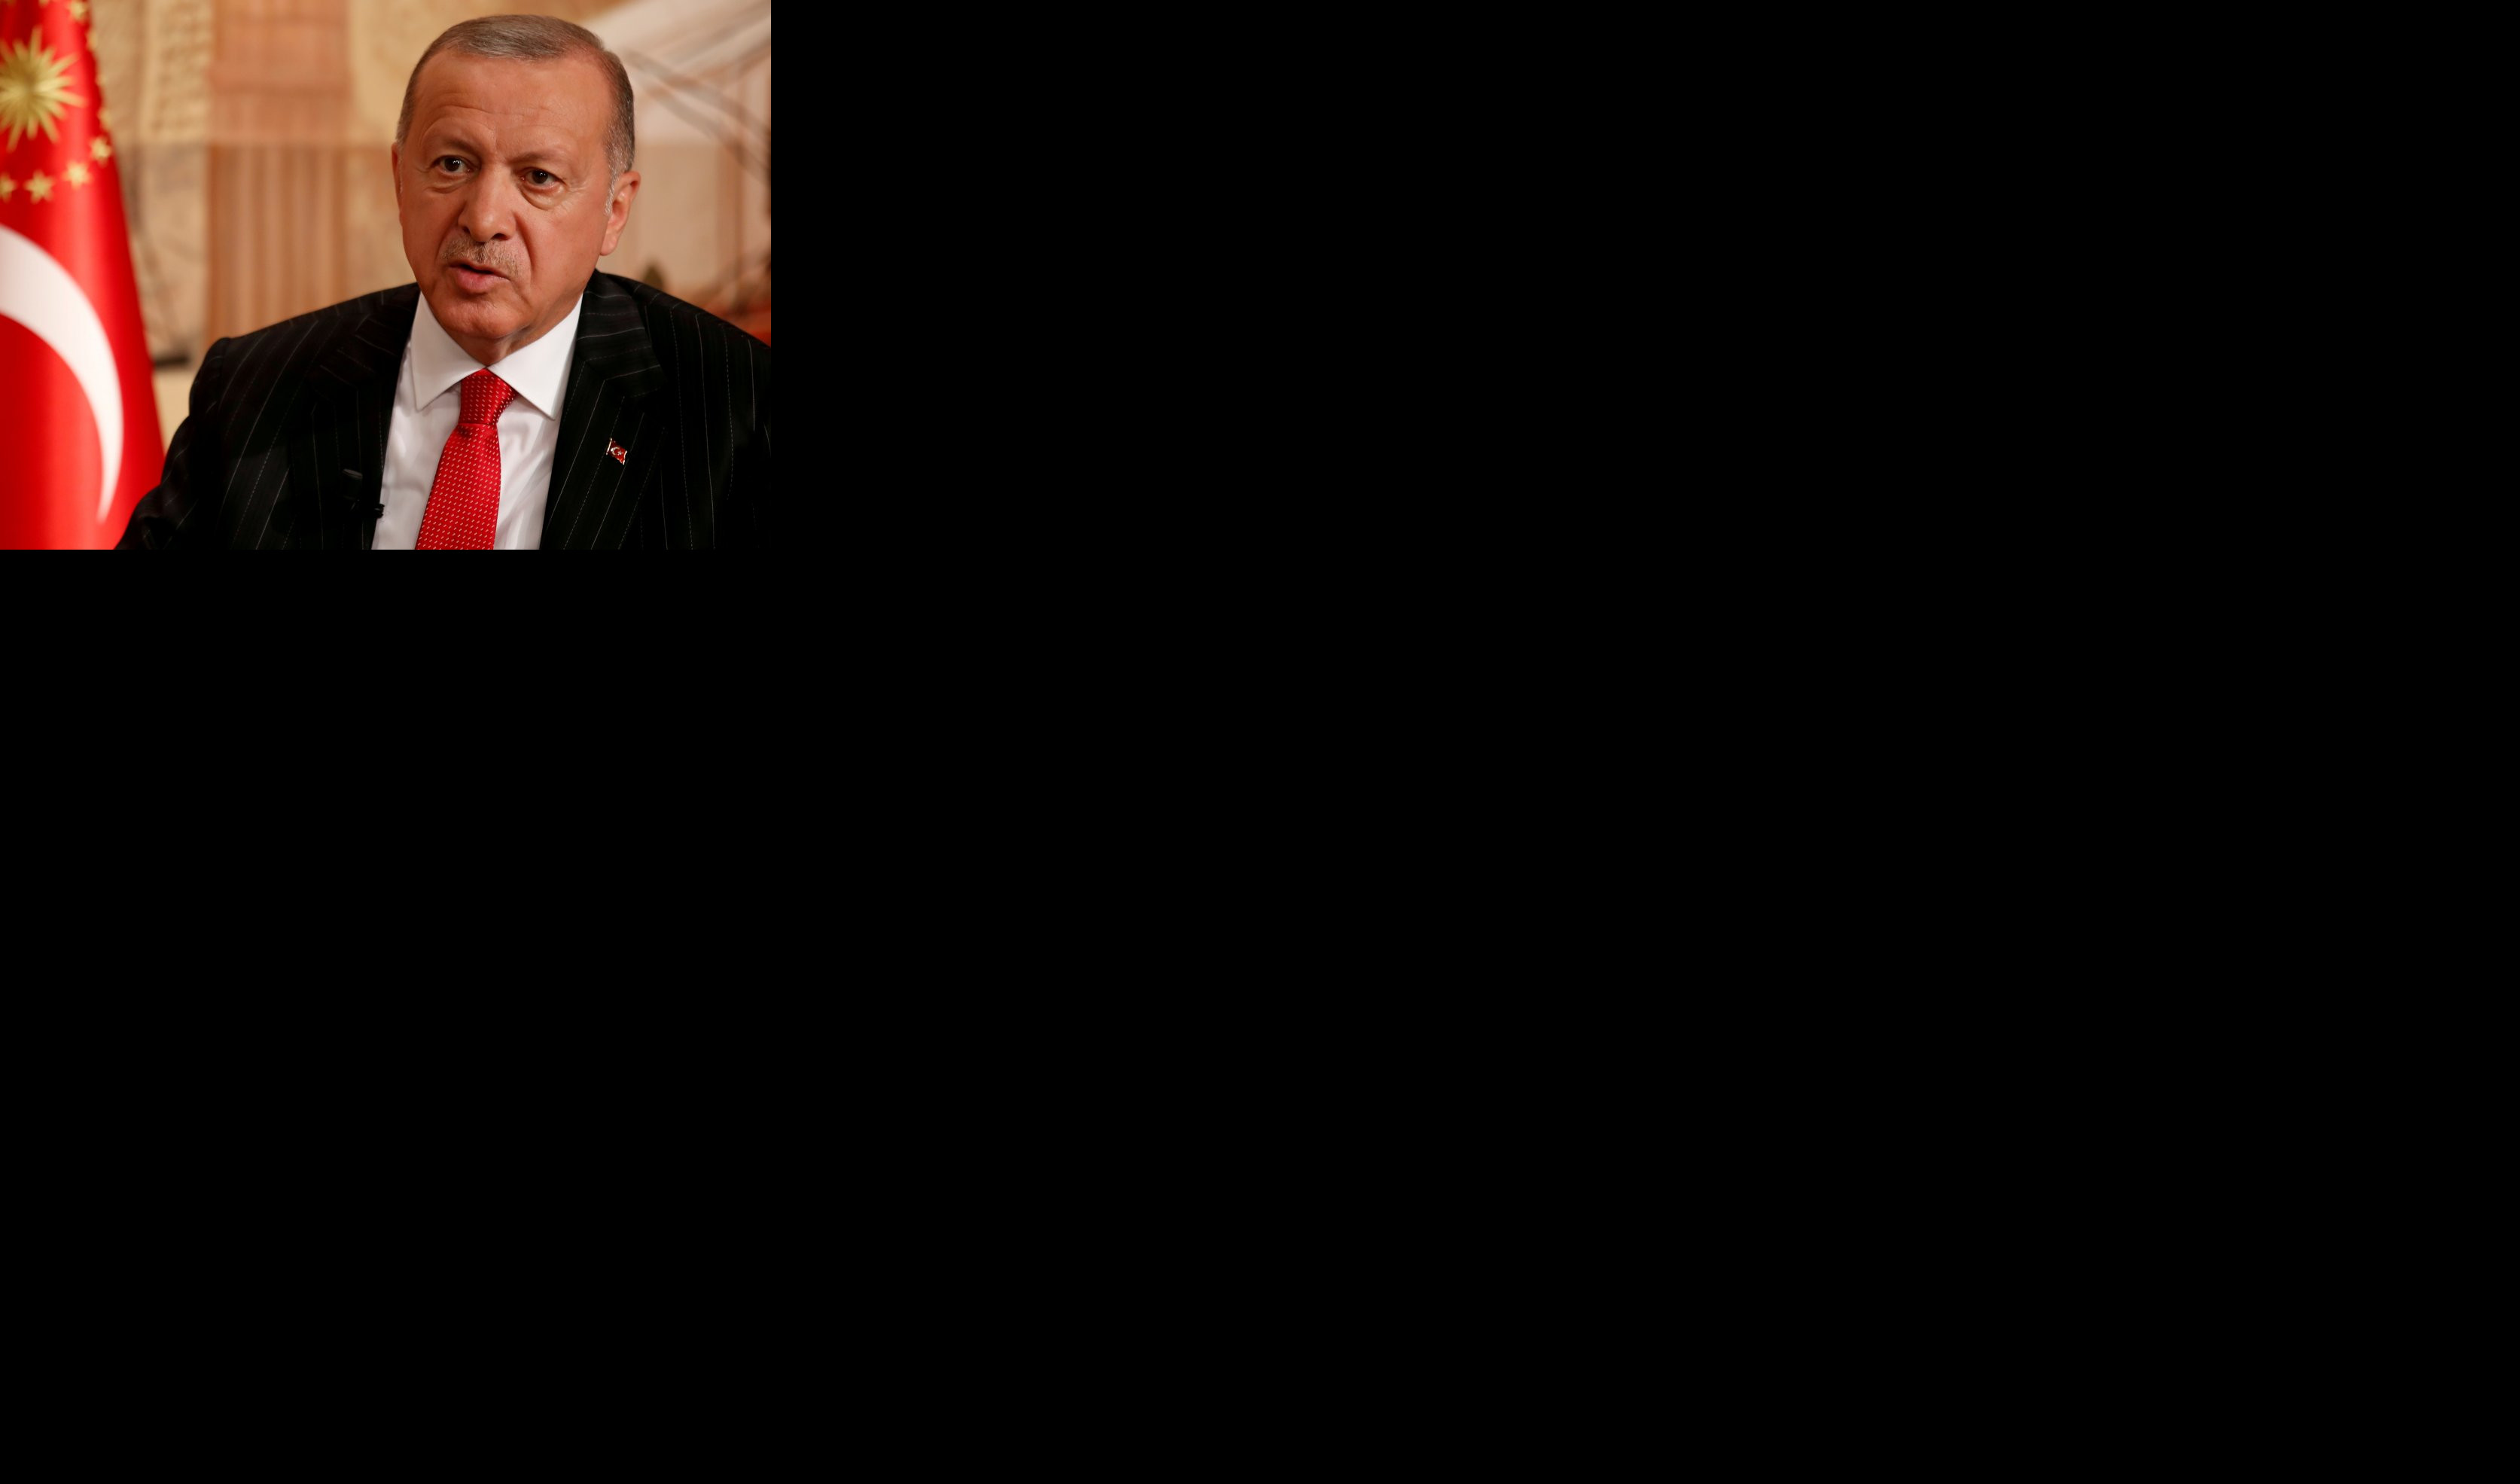 "POČEO JE RAT!" Erdogan digao svet na noge, ČEKA SE PUTINOV ODGOVOR!